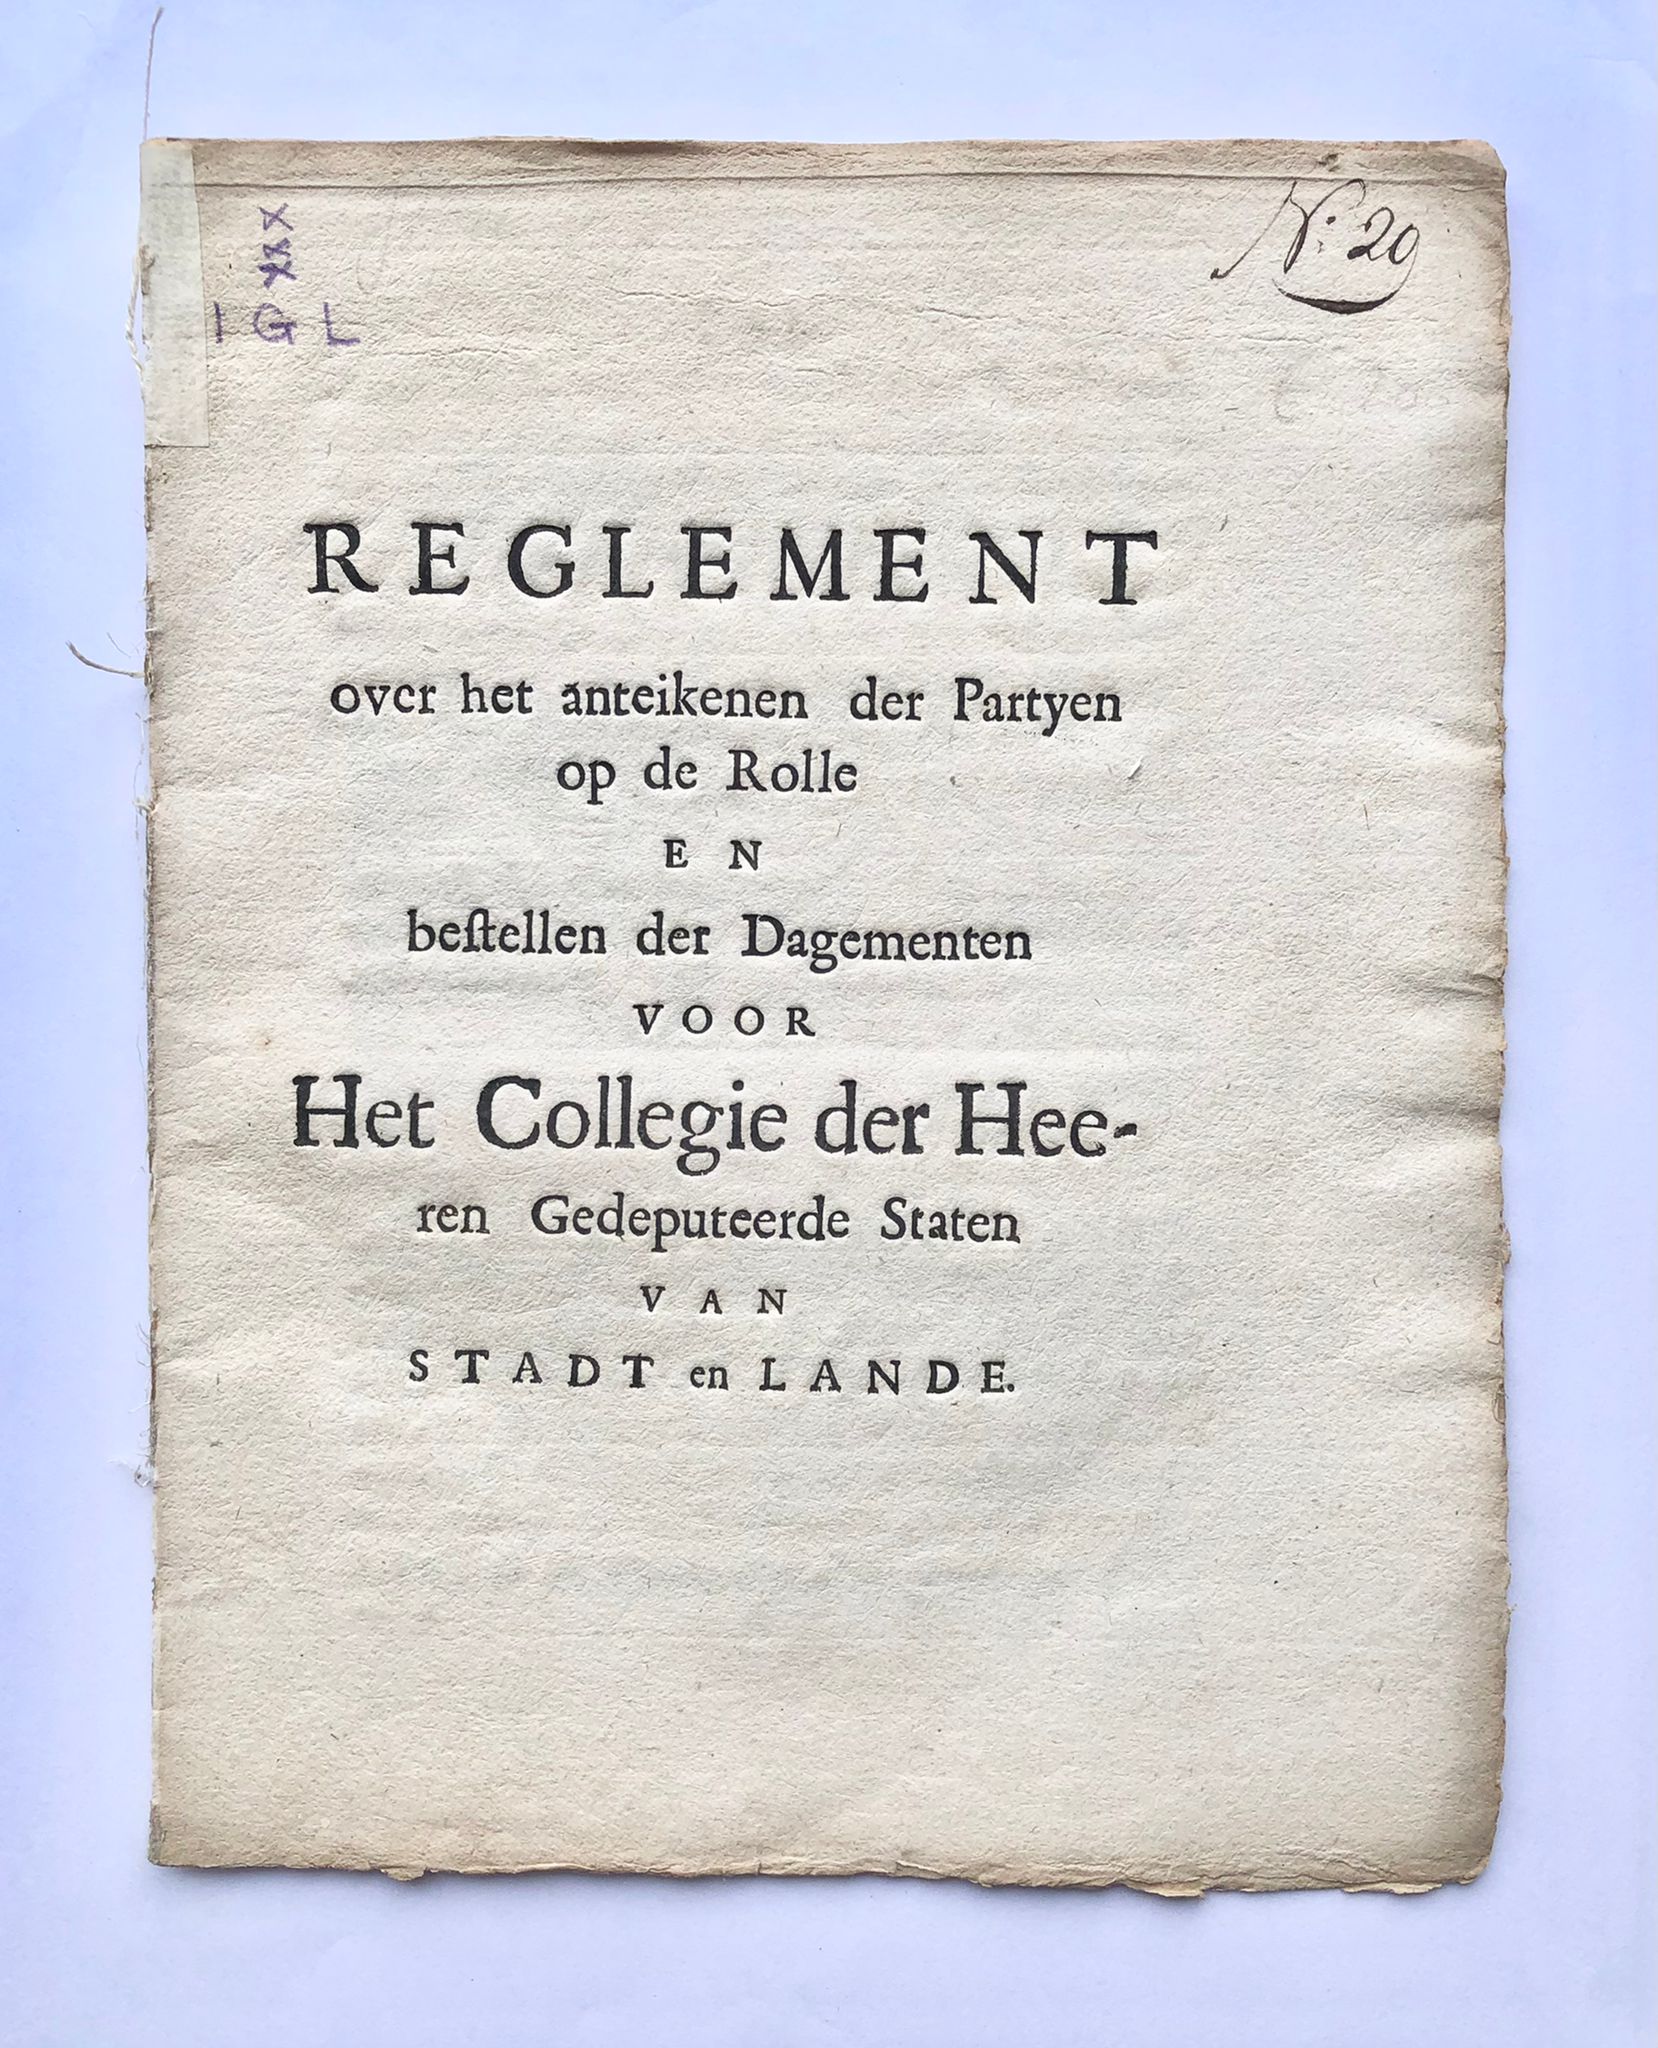 [Groningen, [1727]] Reglement over het anteikenen der Partyen op de Rolle en bestellen der Dagementen voor Het Collegie der Heeren Gedeputeerde Staten van Stadt en Lande, No. 20, [s.l, s.n. [1727], 5 pp.